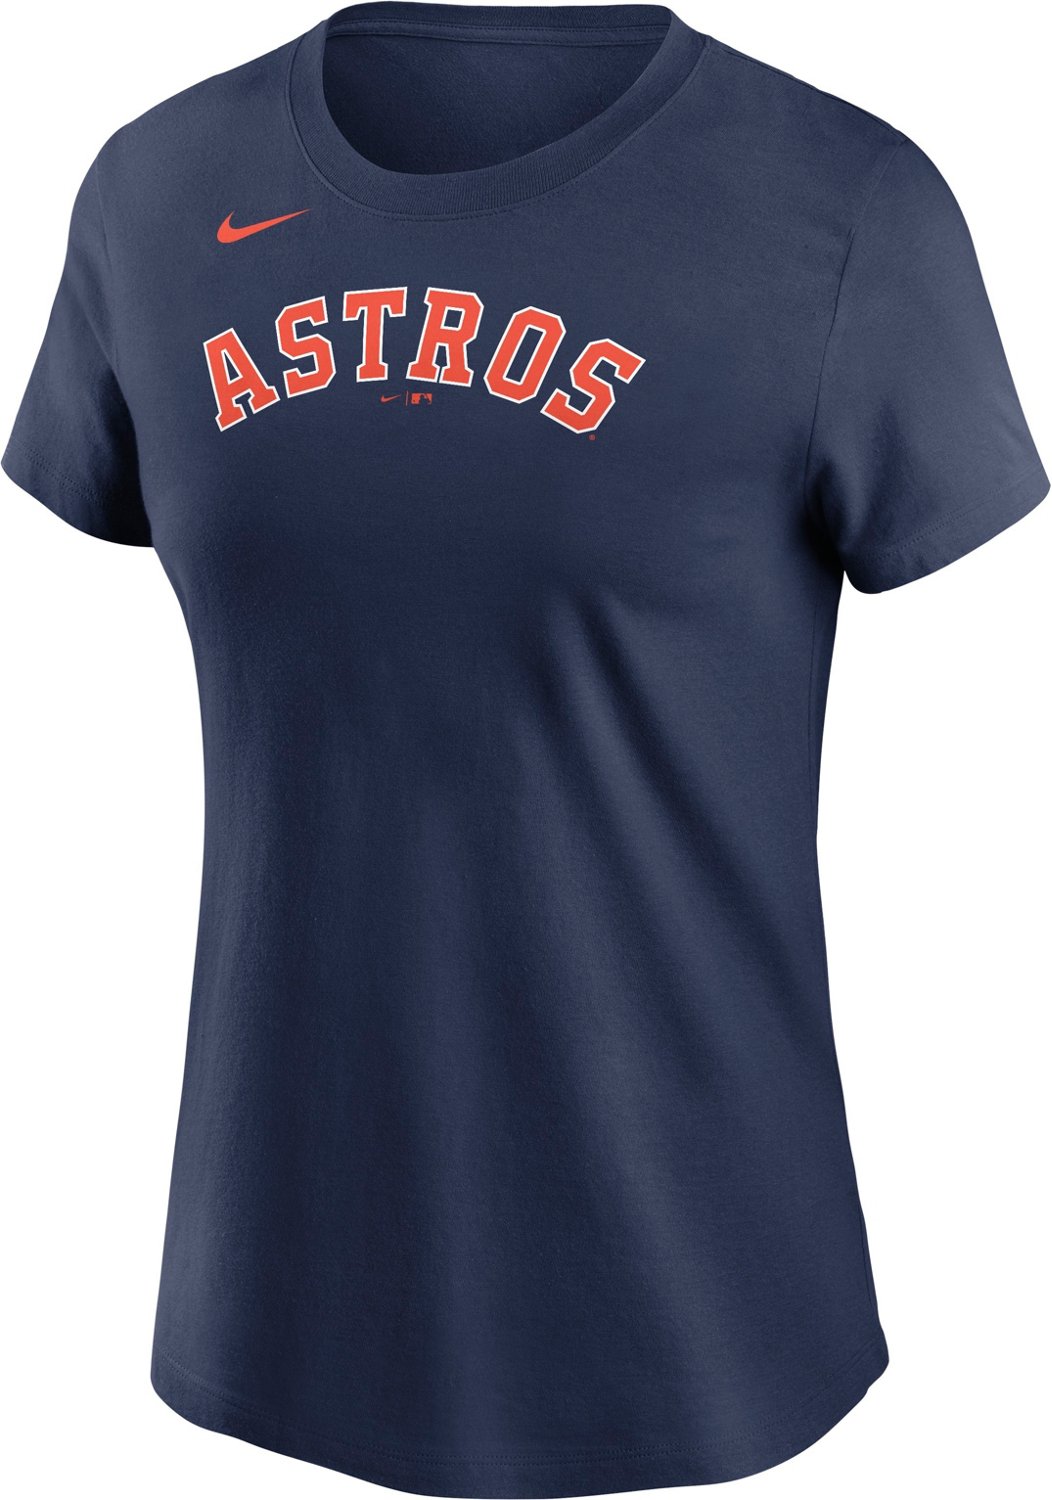 Pinkerton Academy Astros T-Shirt C2 – Teezou Store